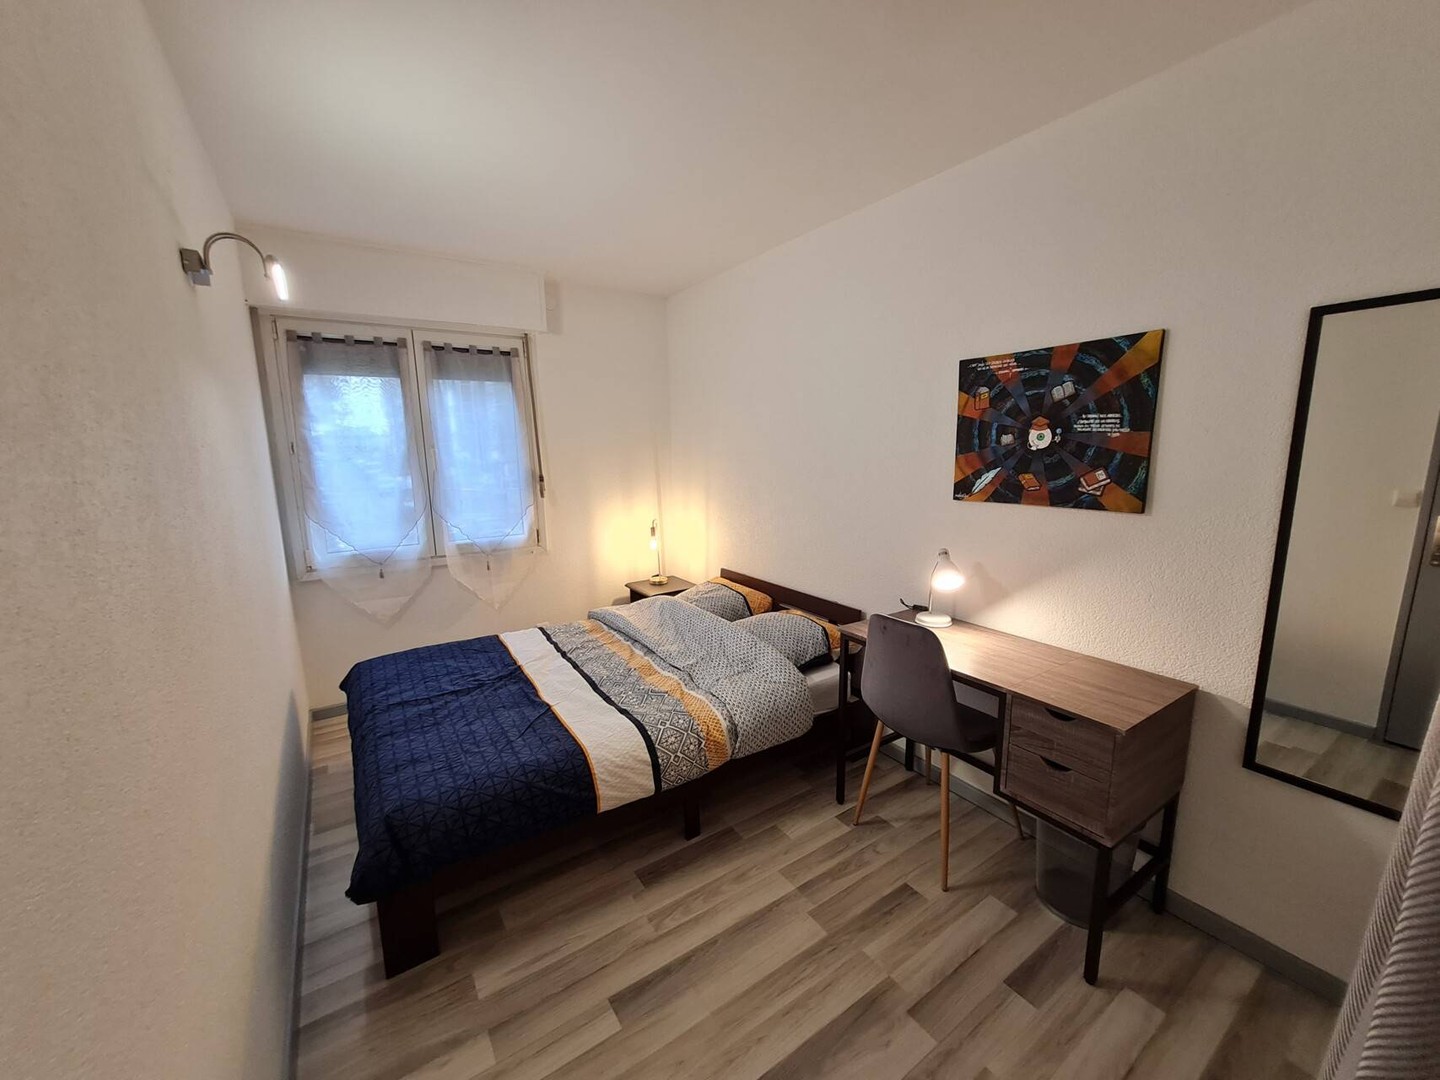 Quarto para alugar com cama de casal em Mulhouse